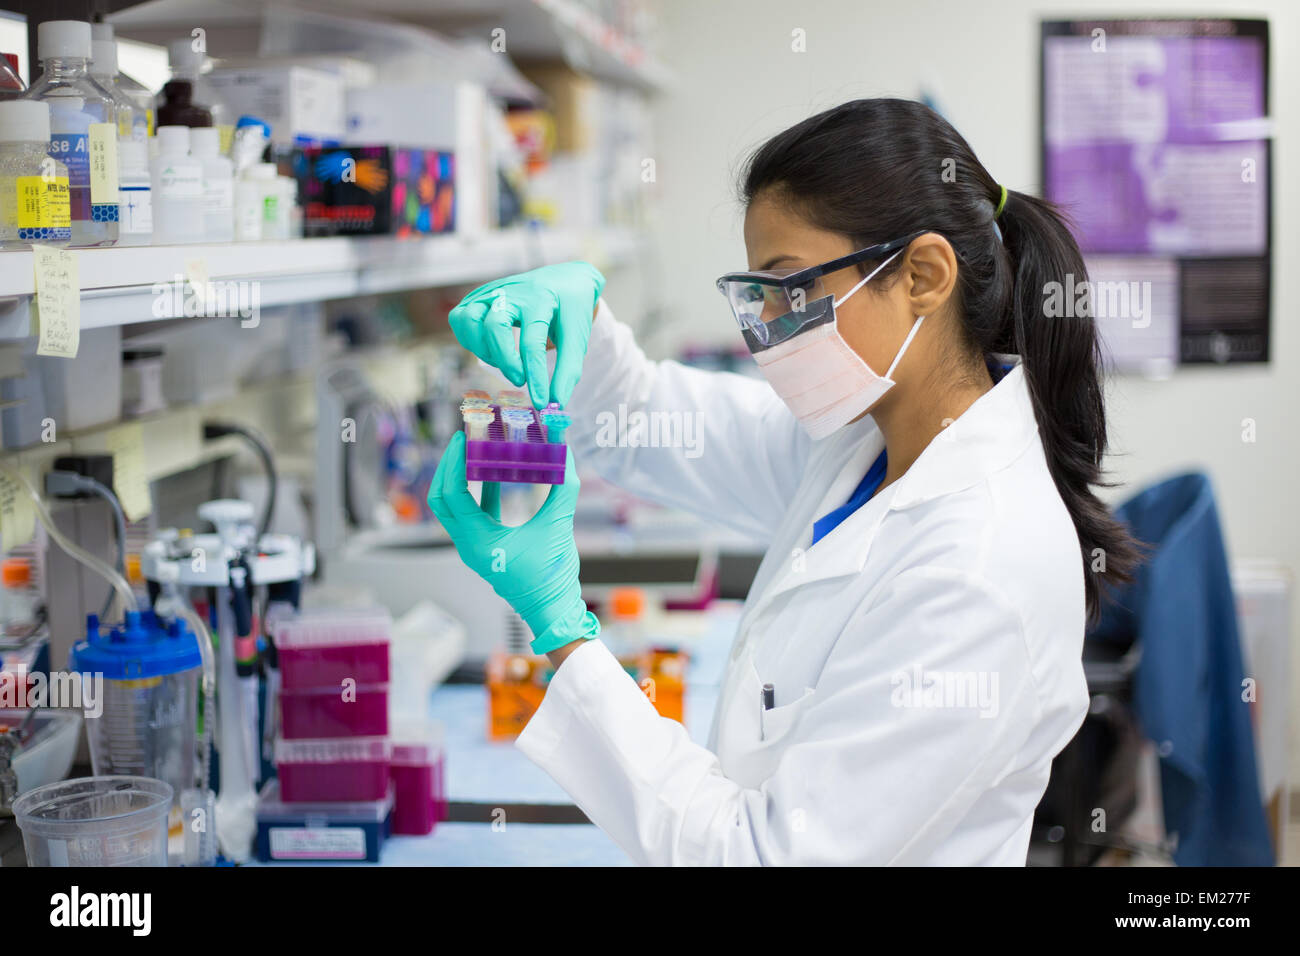 Closeup retrato, Young Scientist en labcoat llevando guantes de nitrilo, haciendo experimentos en laboratorio, sector académico. Foto de stock